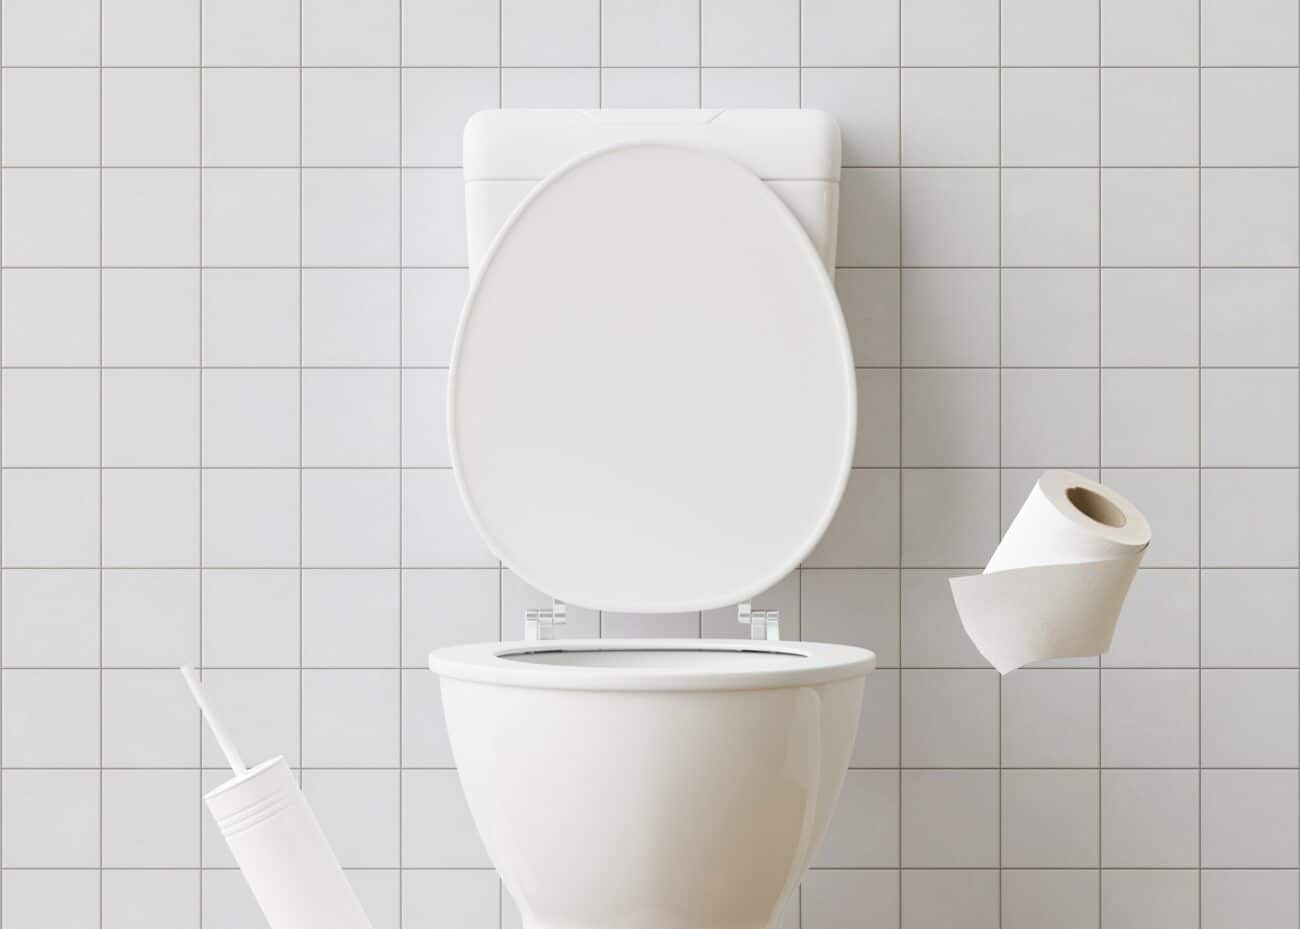 White ceramic toilet